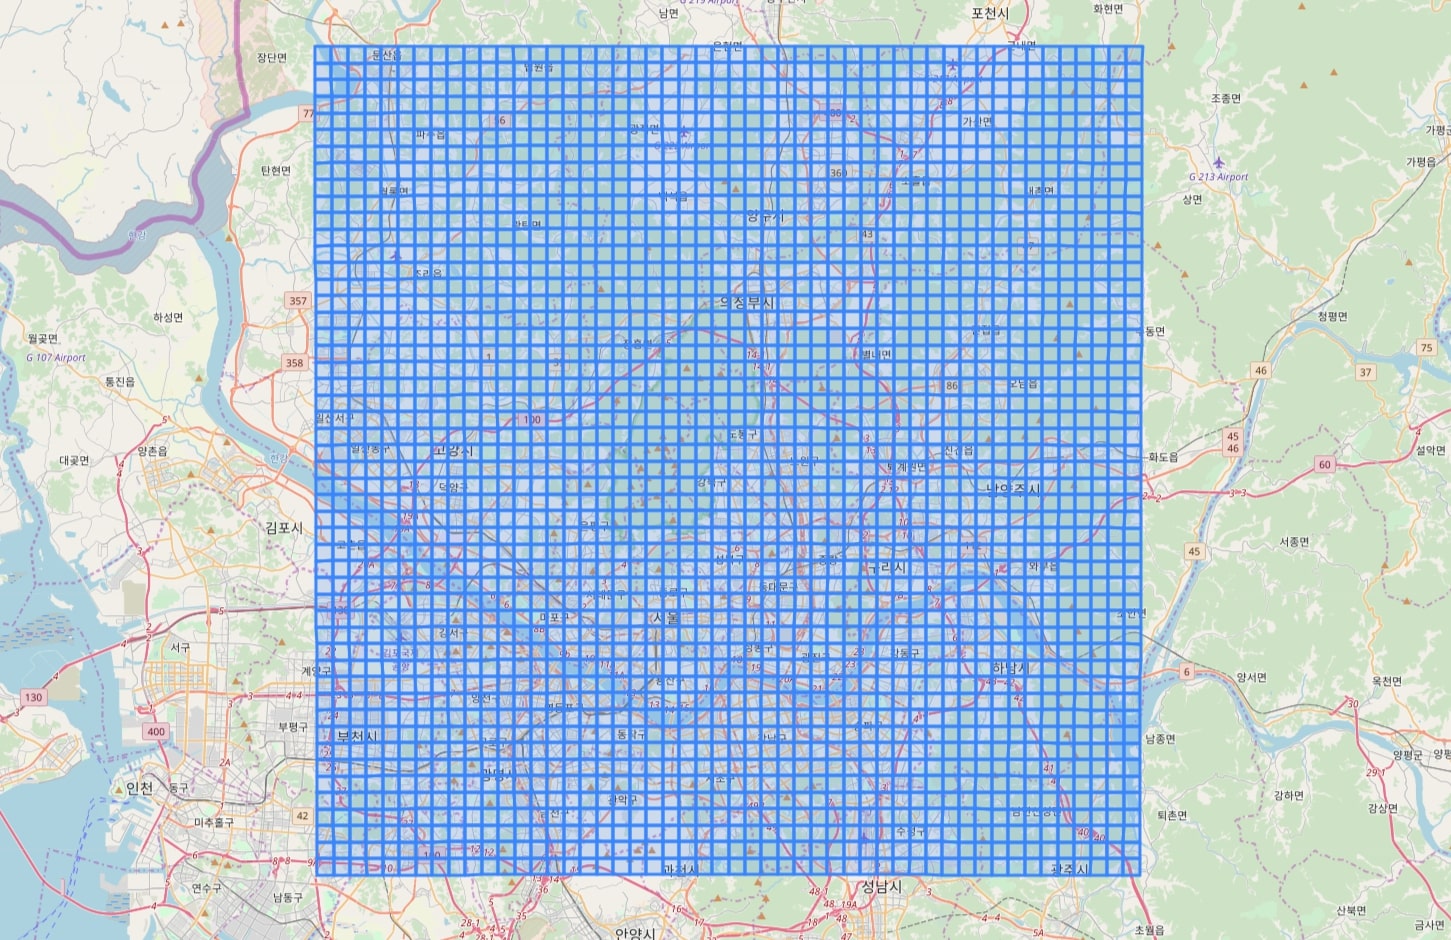 pic2-seoul-1km-50x50-grid.jpg